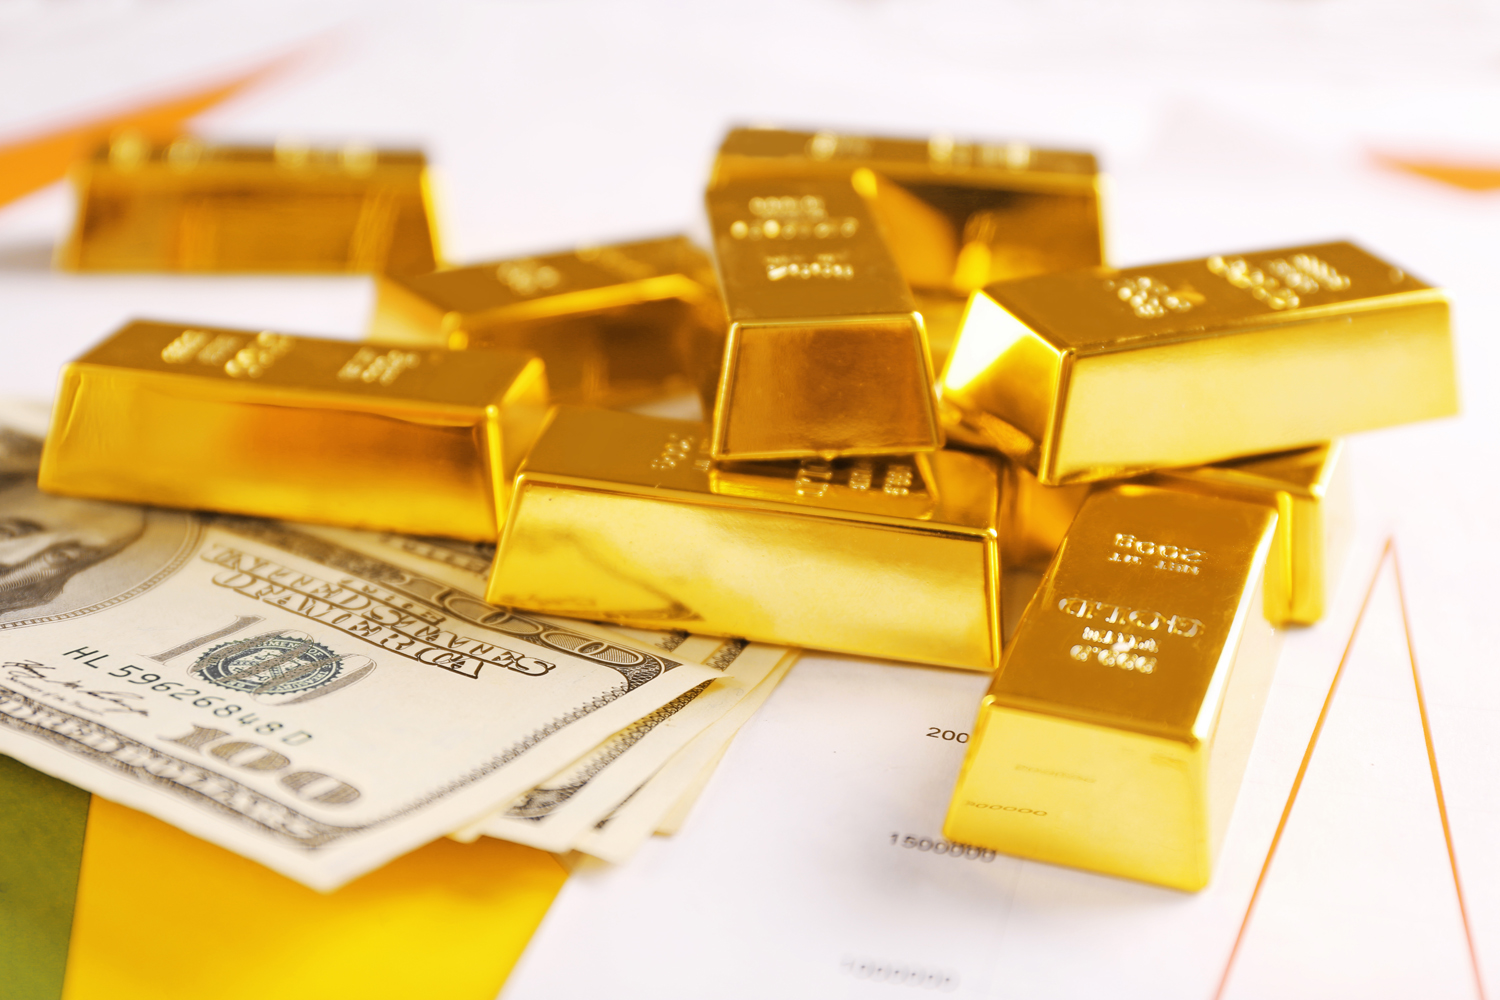 الذهب يبلغ أعلى مستوى له بعامين مع خروج بريطانيا من الاتحاد الأوروبي